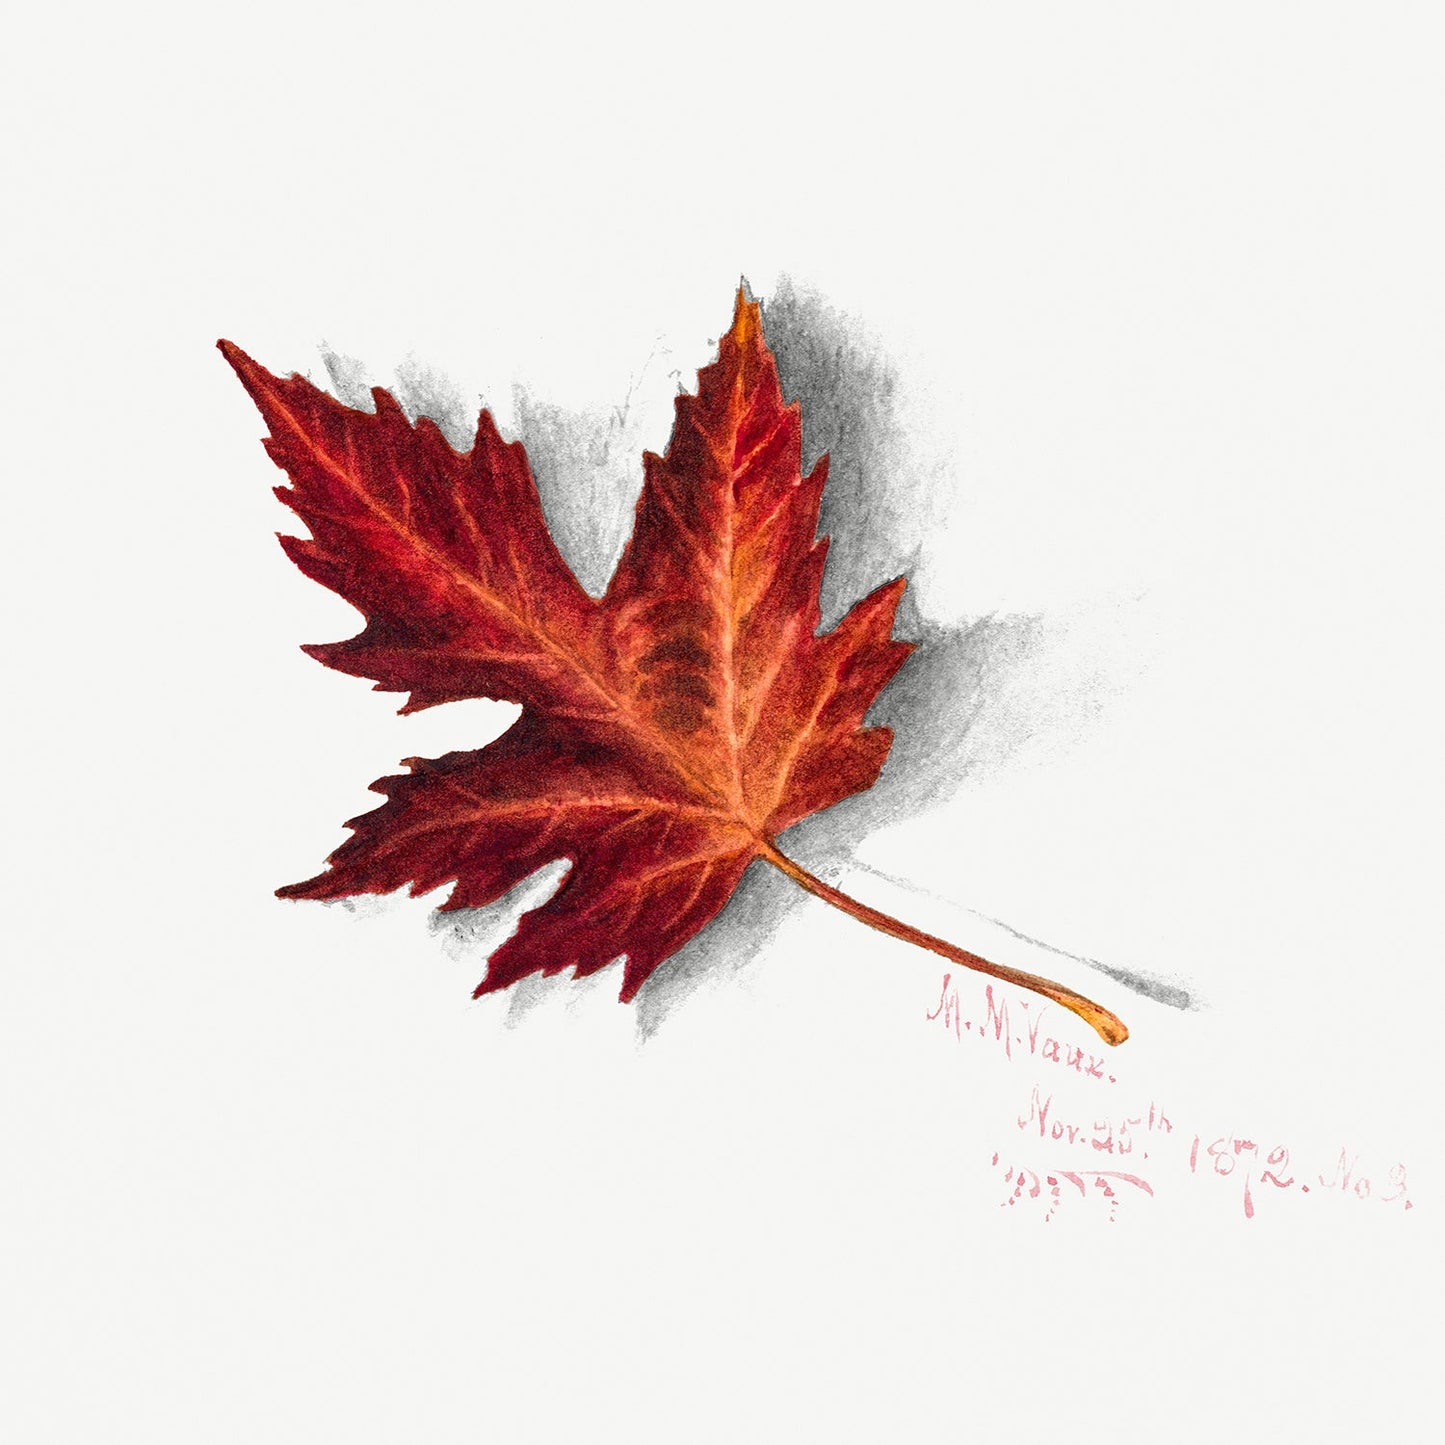 Botanical Plant Illustration - Autumn Leaf by Mary Vaux Walcott